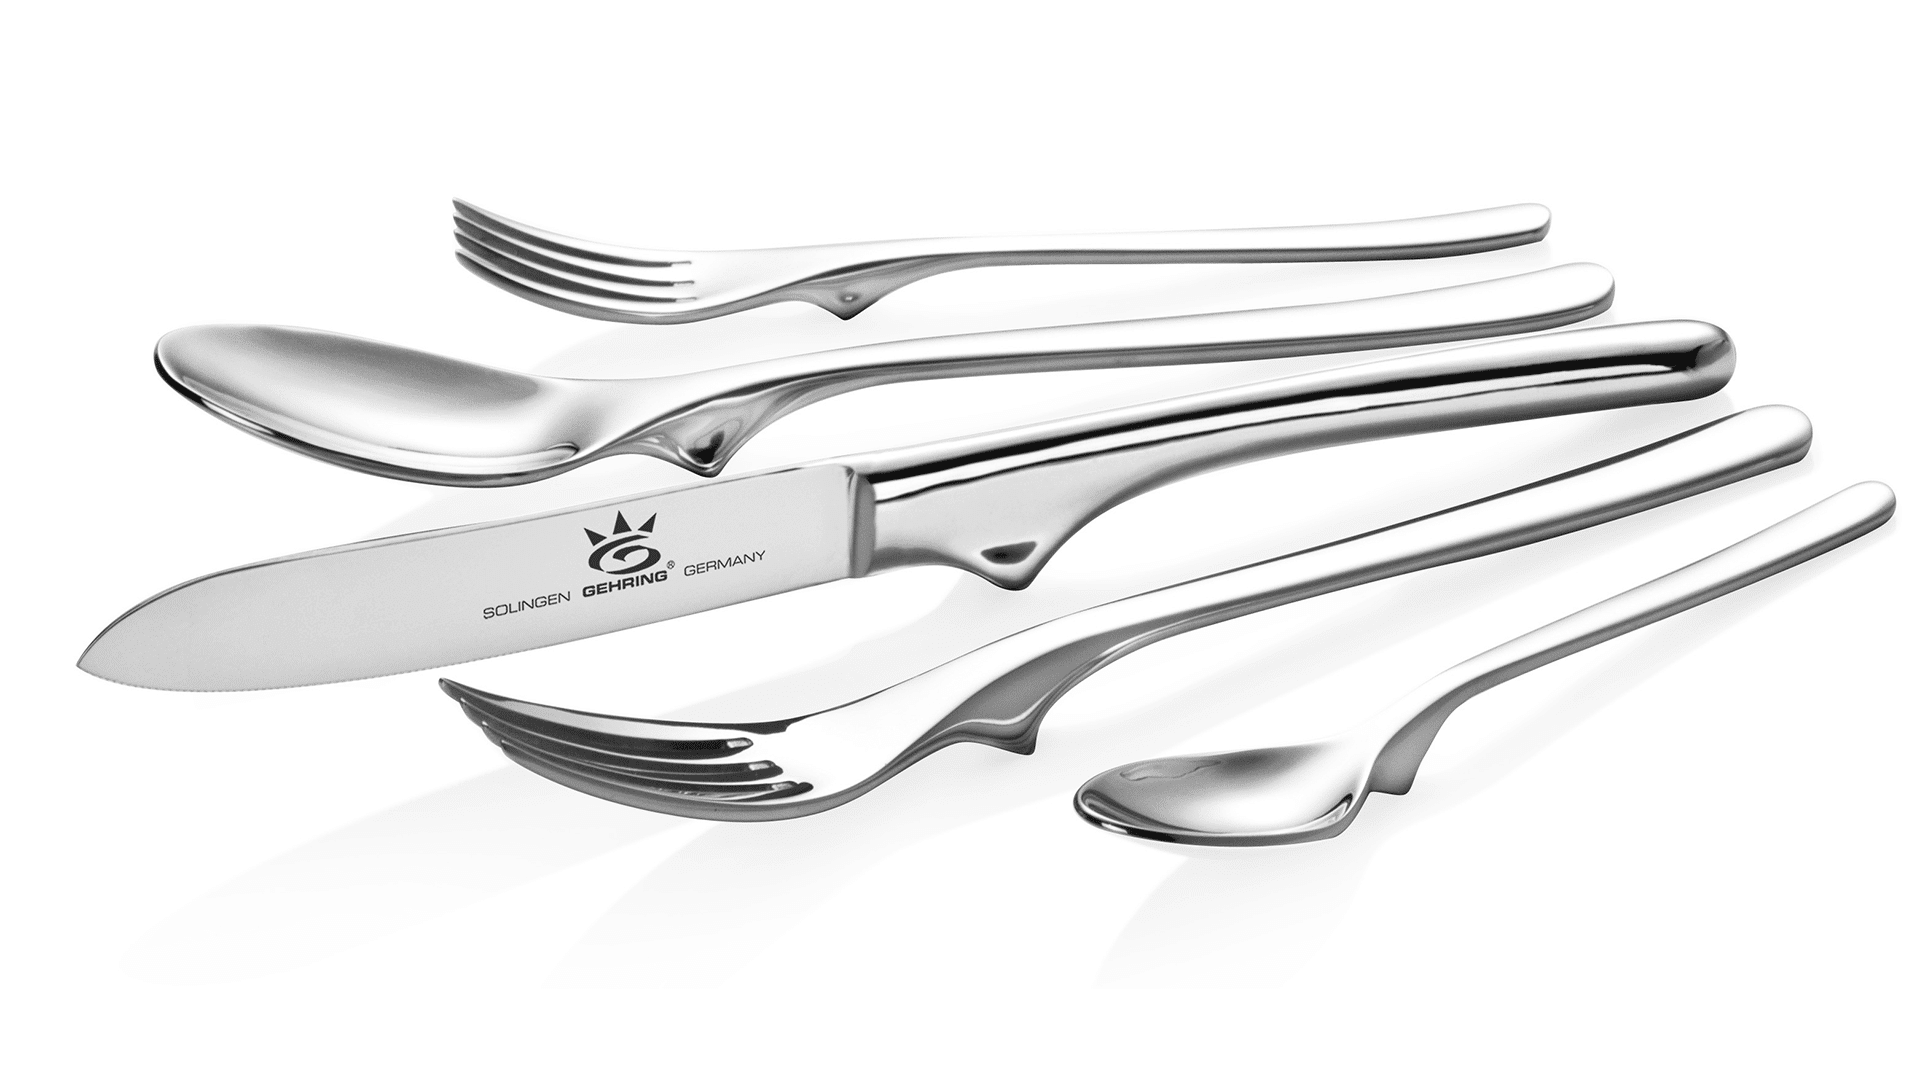 gehring-menu-cutlery-top-30-piece-stainless steel